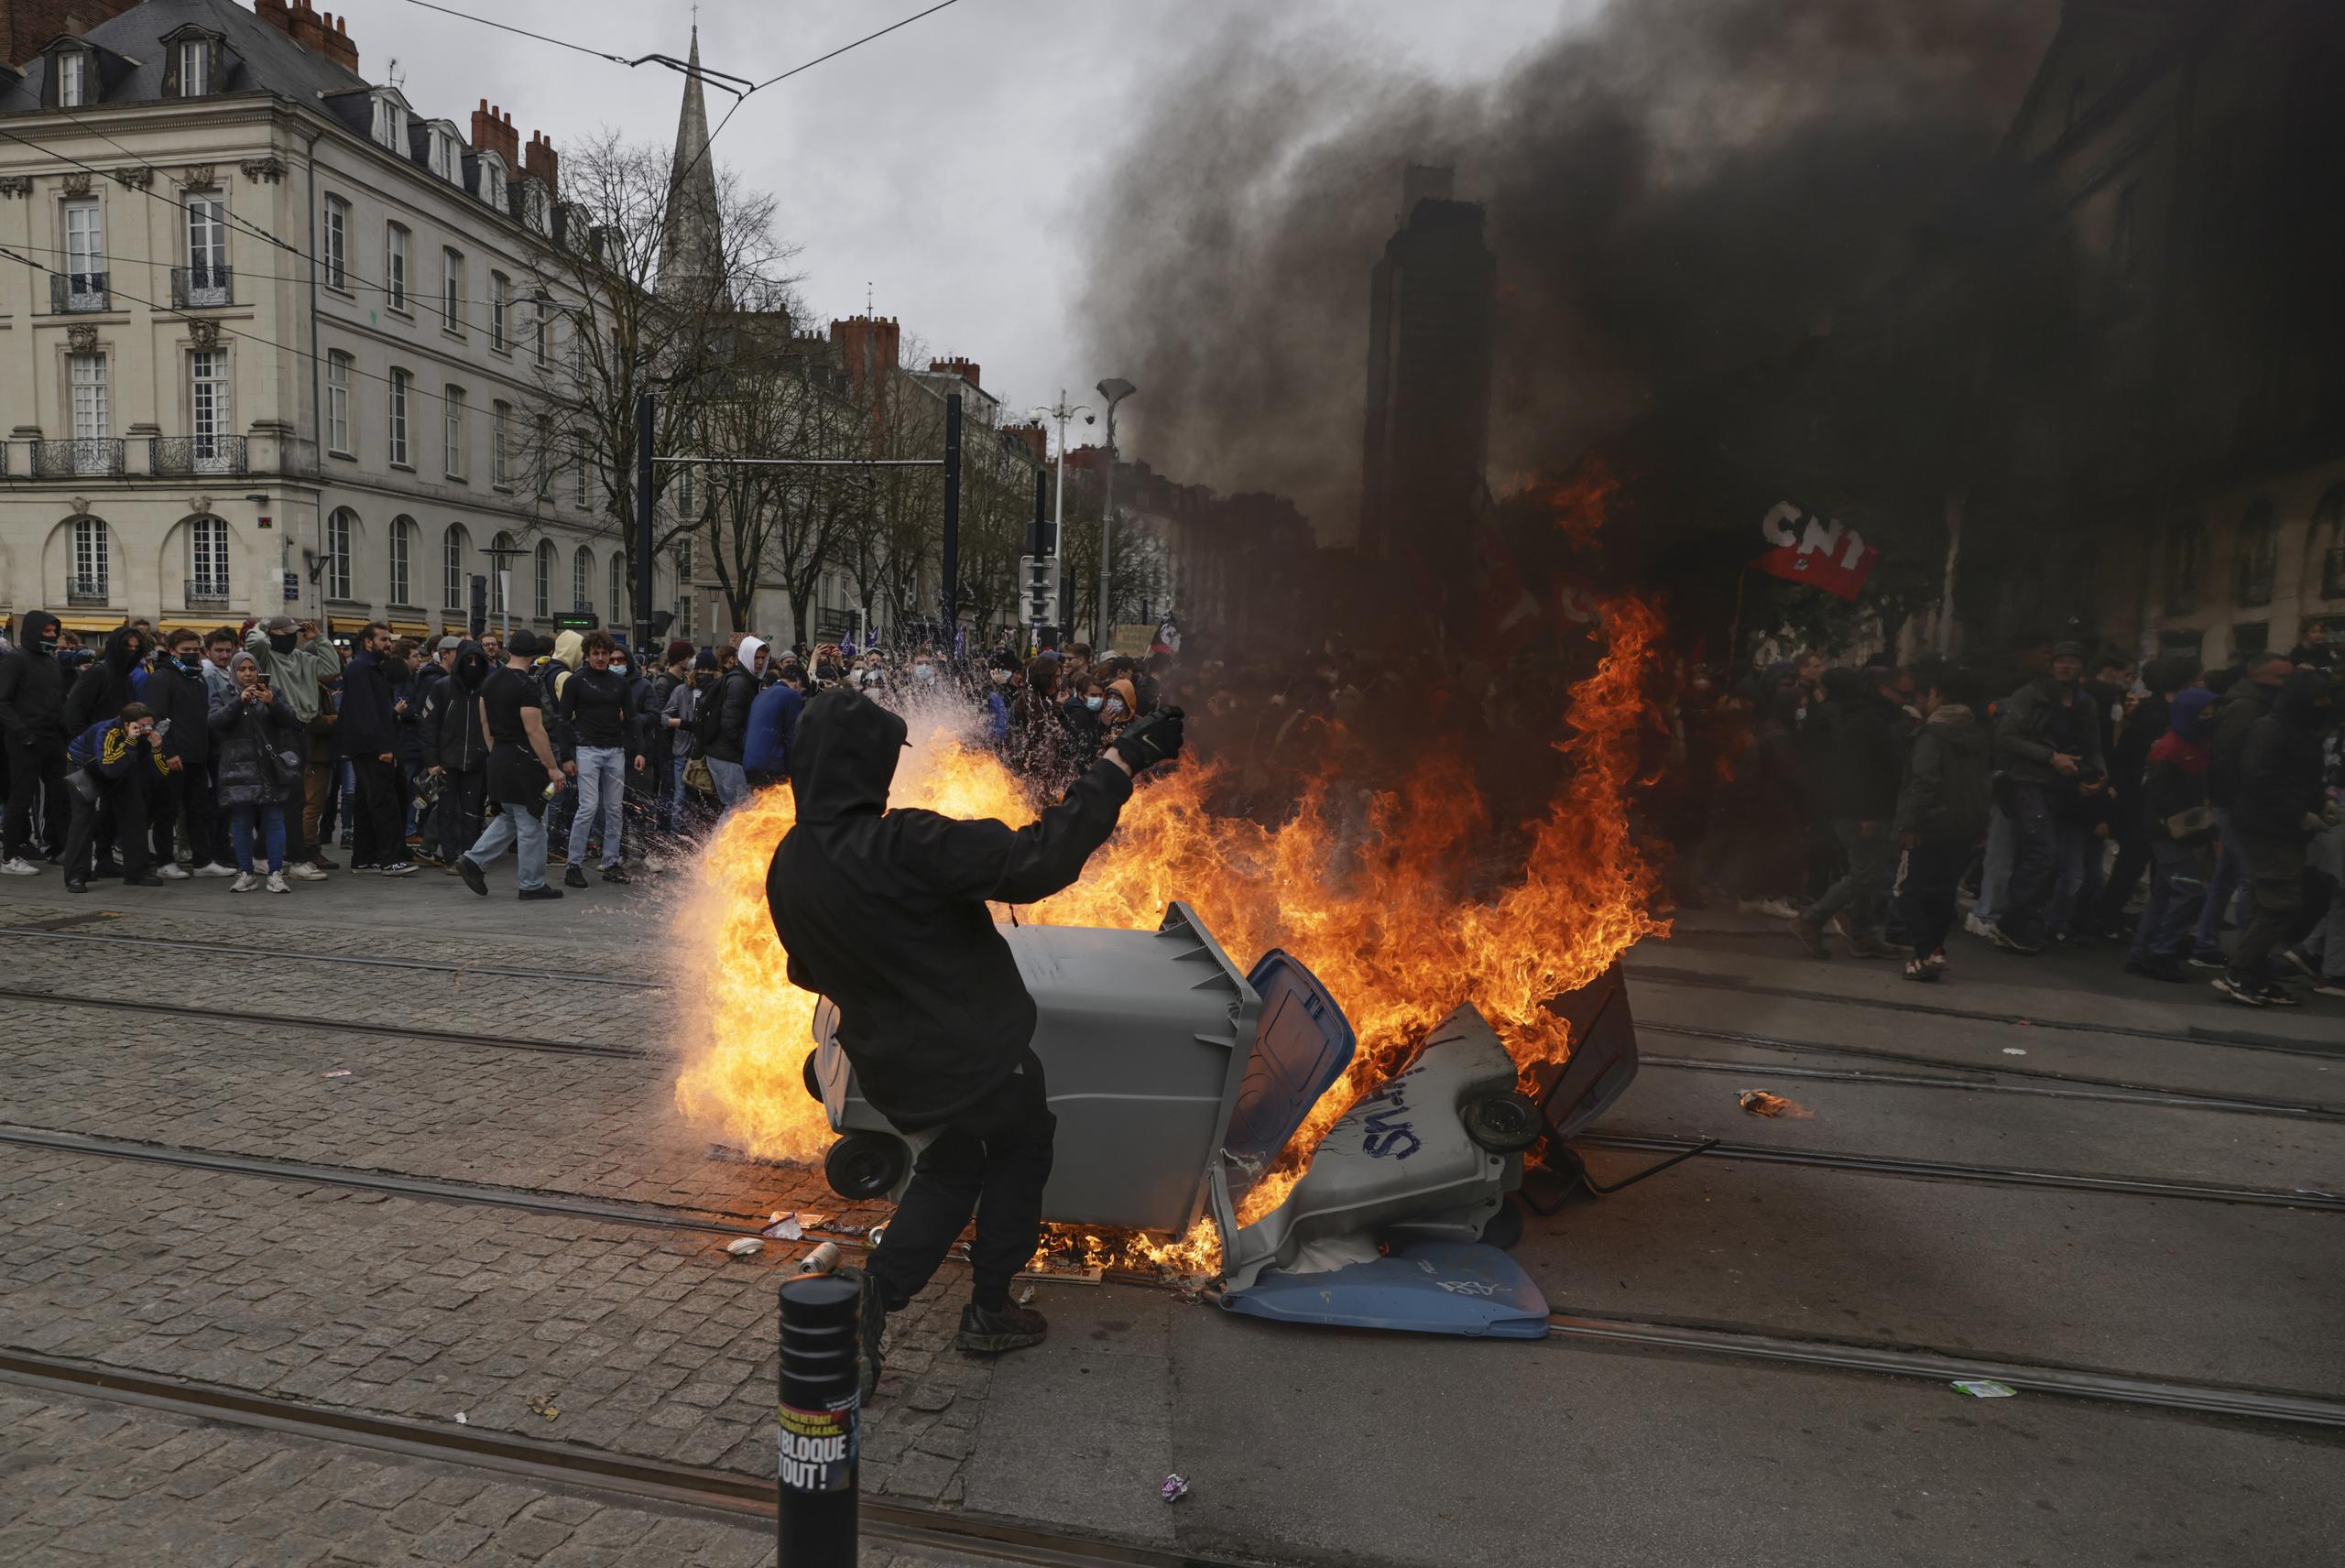 Un manifestante está parado junto a un contenedor de basura en llamas durante una manifestación en Nantes, occidente de Francia. (AP).